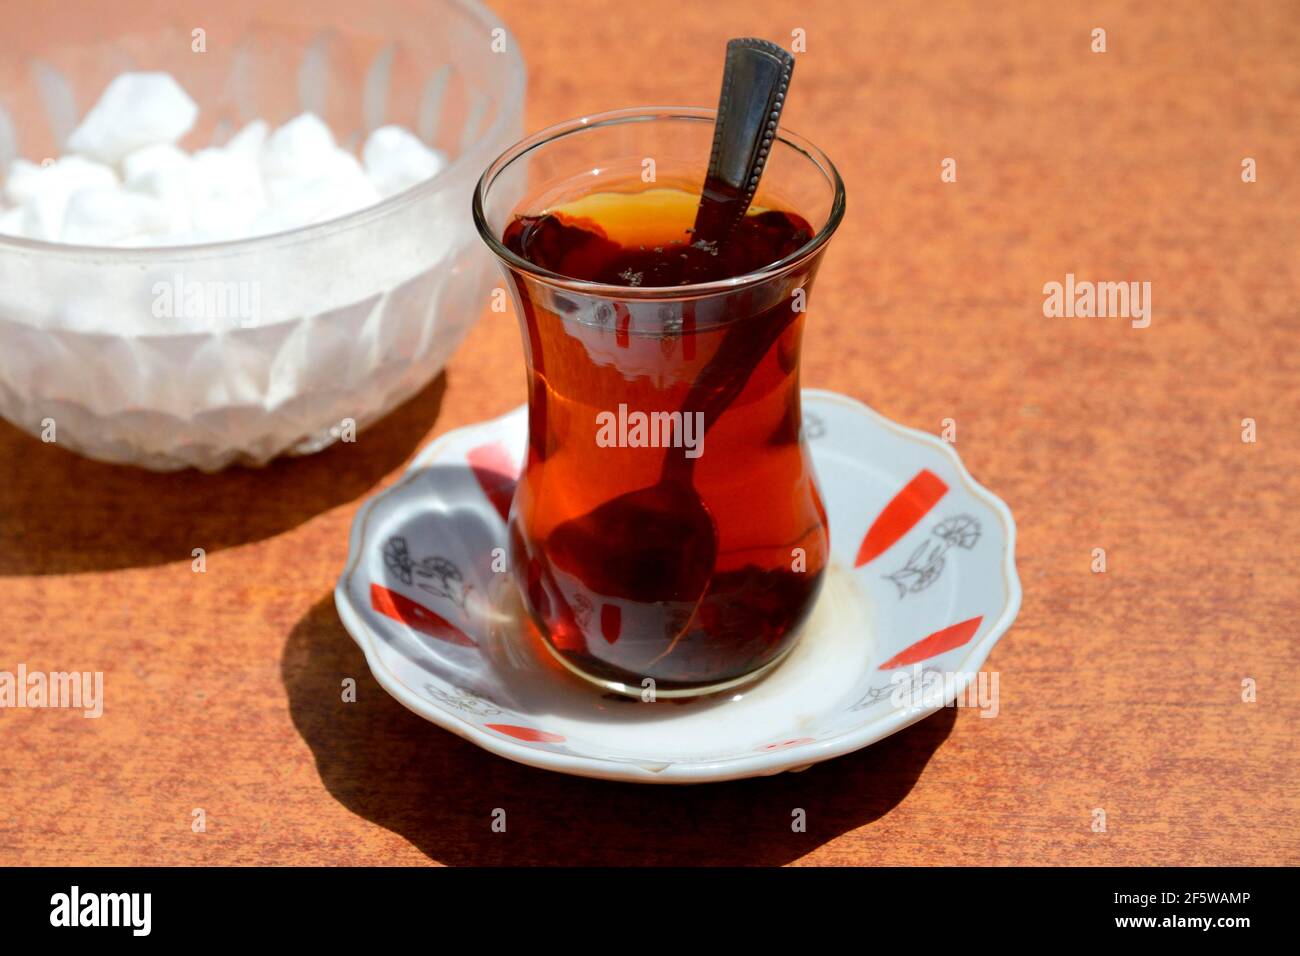 Turkey tea immagini e fotografie stock ad alta risoluzione - Alamy